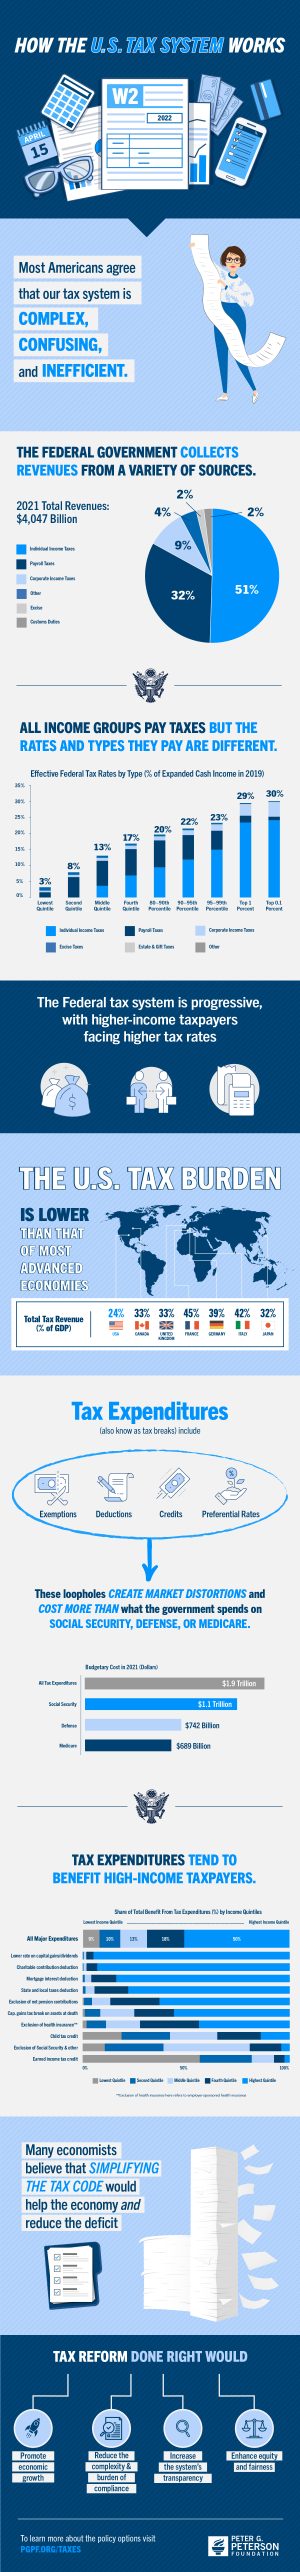 US Tax System